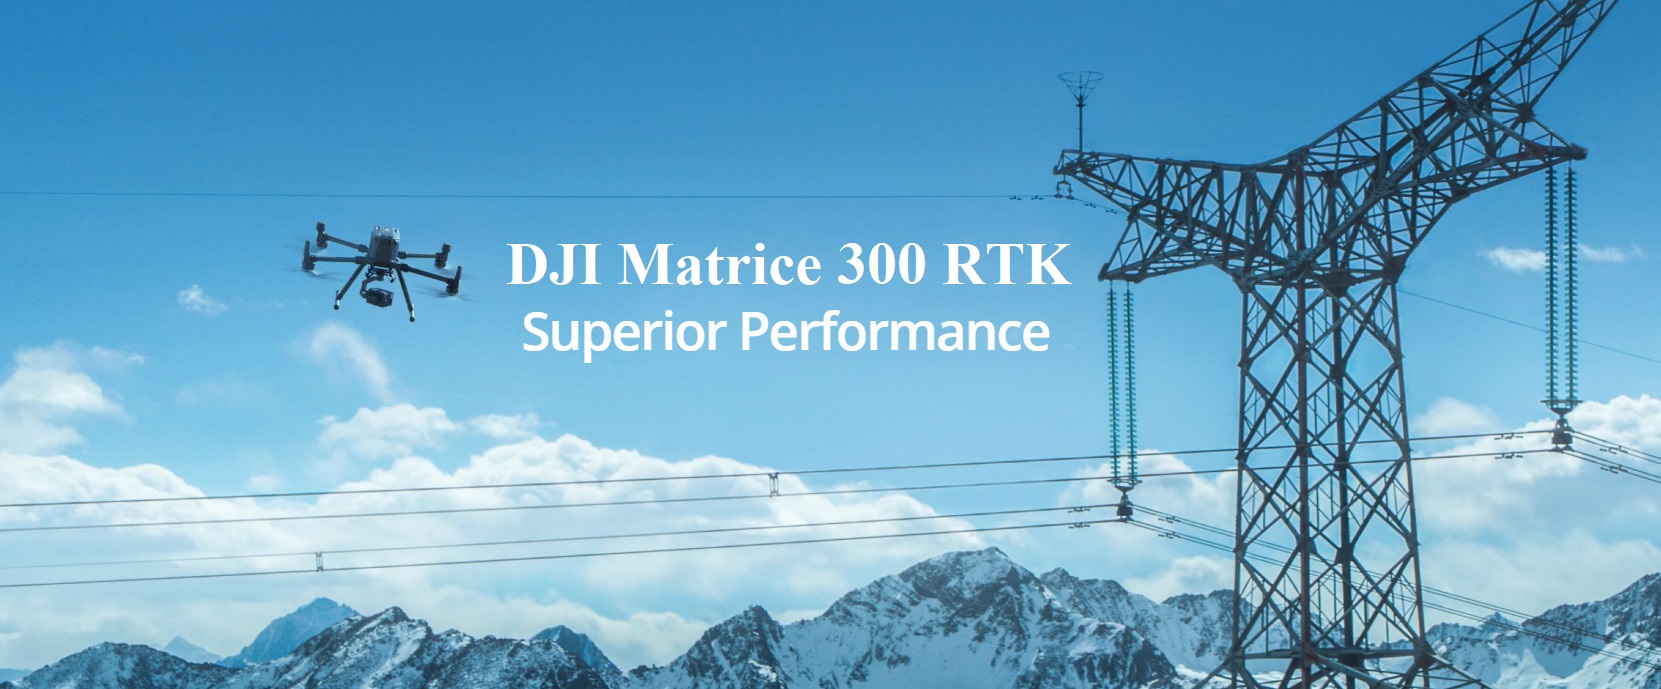 DJI-Matrice-300-RTK-2